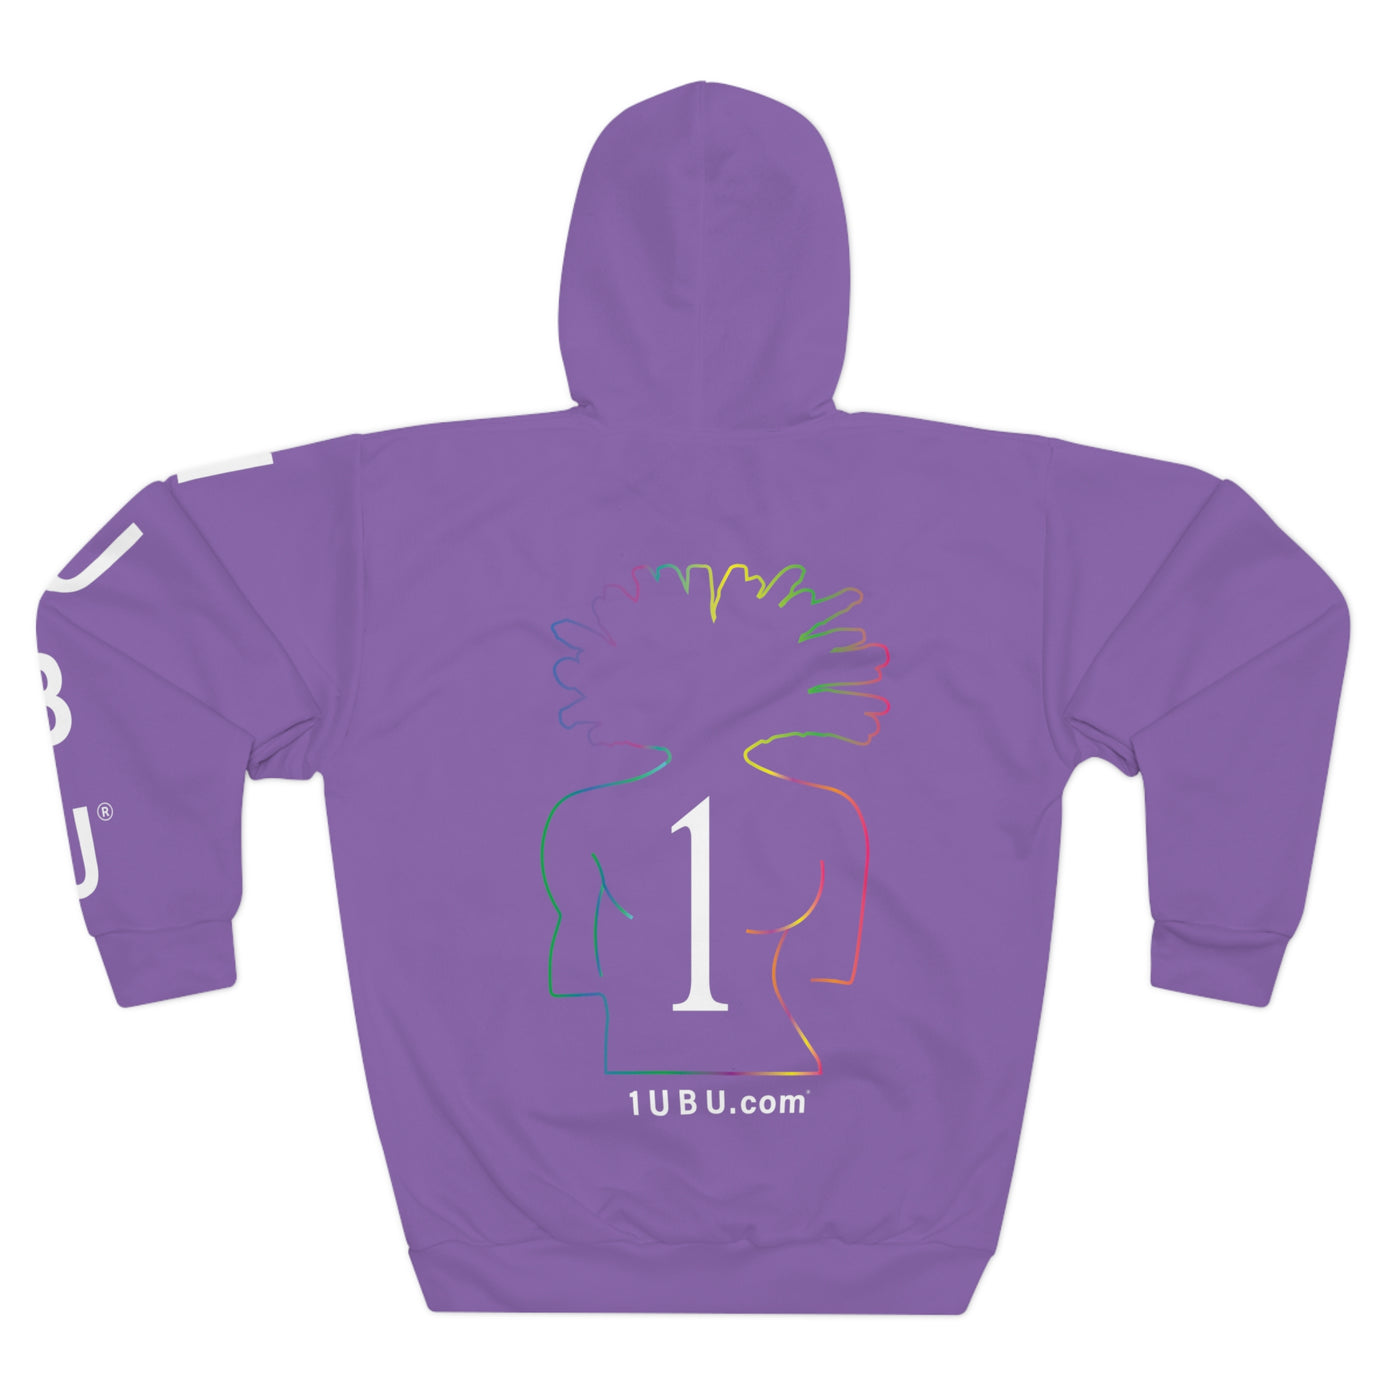 Unisex Pullover Hoodie with sleeve detail - Multifaceted Logo Hoodie - Purple Hoodie